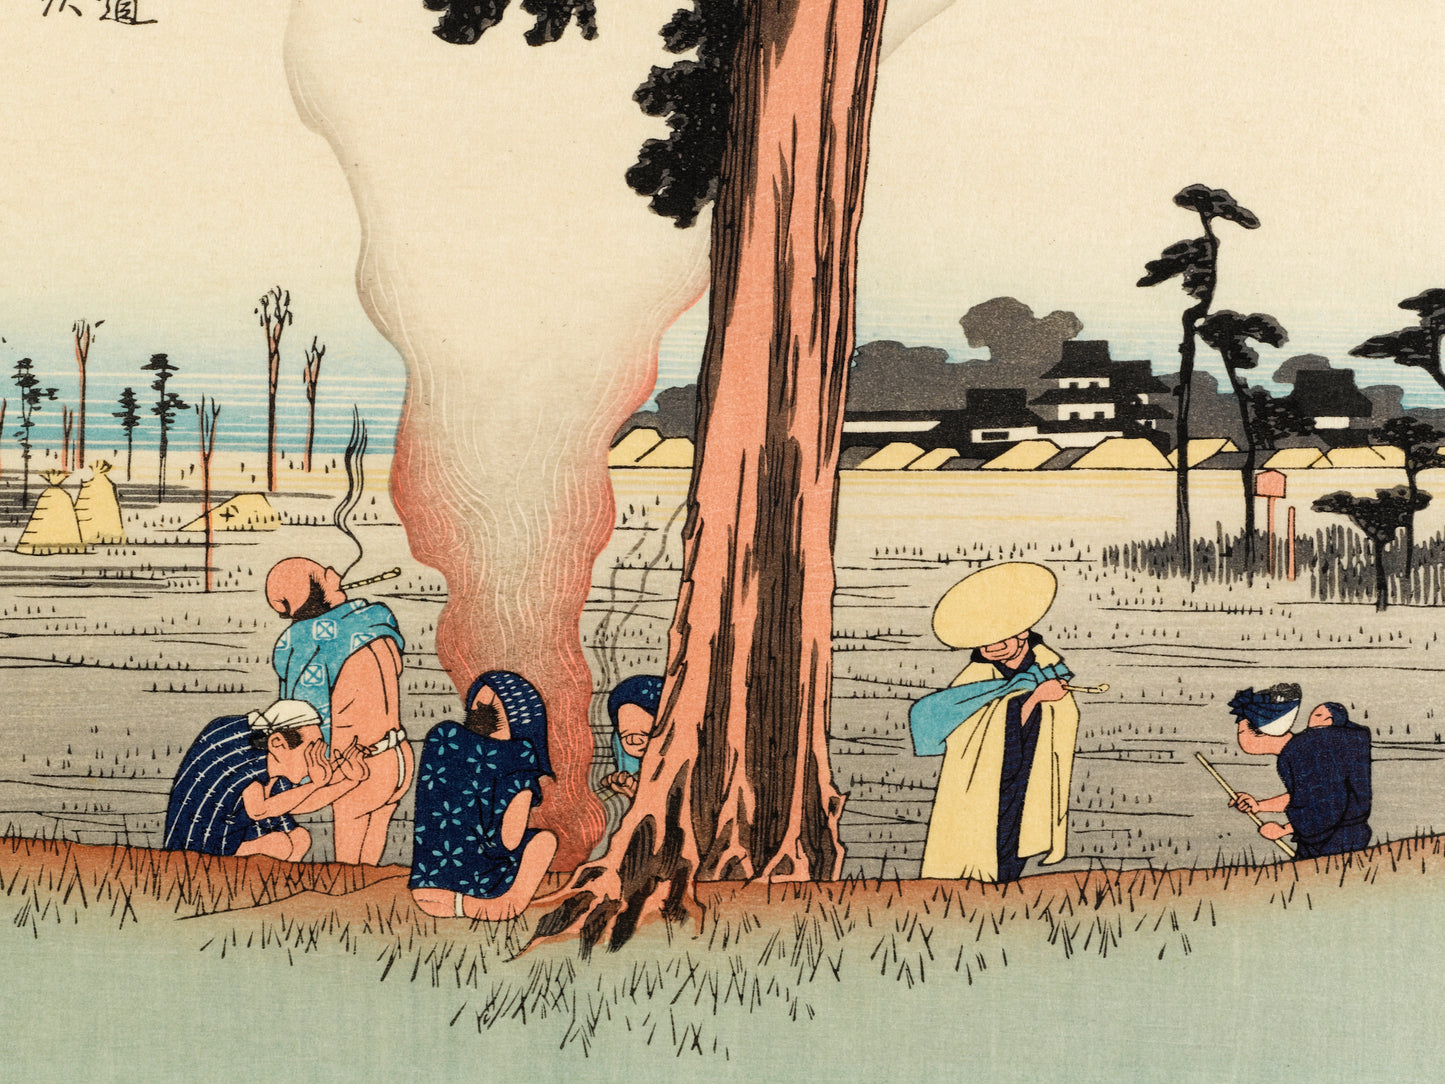 estampe japonaise de hiroshige grand tokaido des voyageurs font halte sous un pin, se rechauffent autour d'un feu